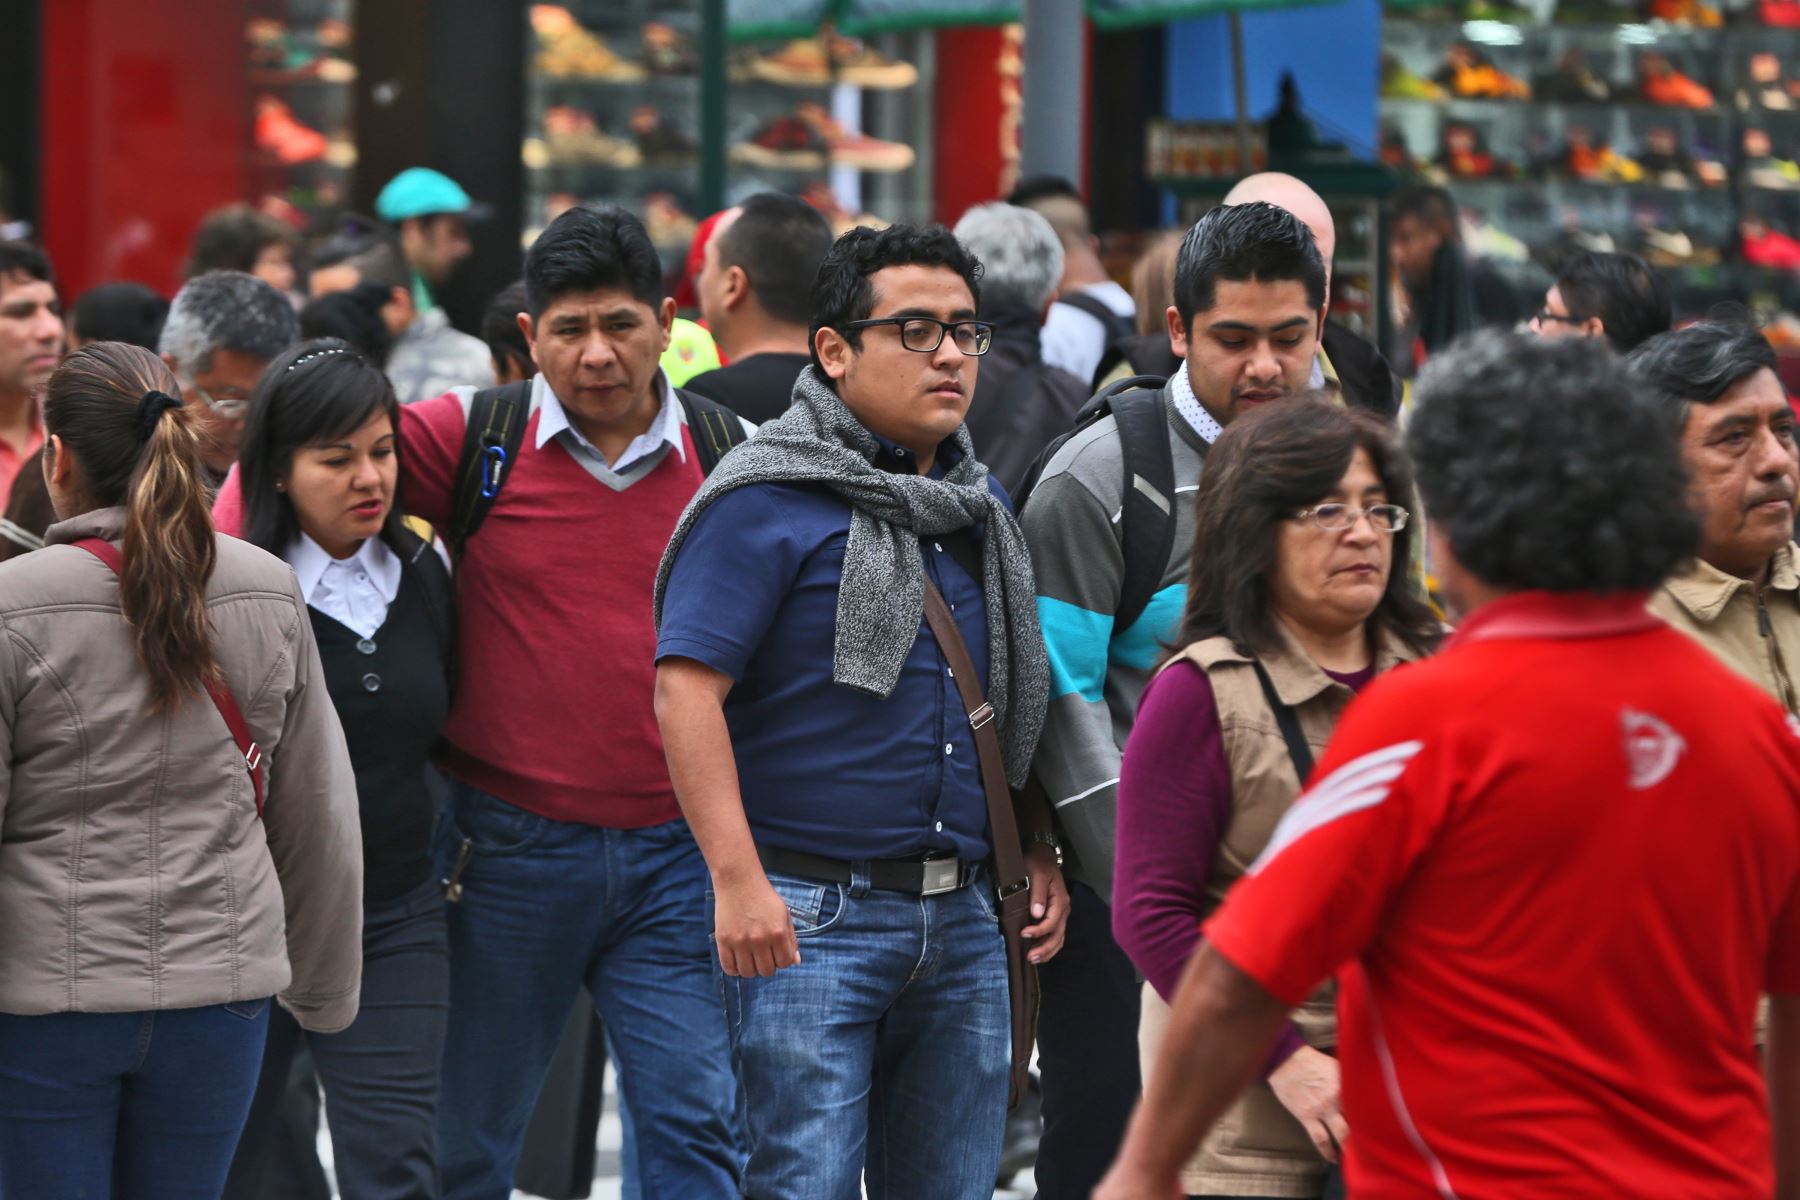 Costo de vida y delincuencia, son los problemas que más preocupan a los peruanos, según última encuesta de Ipsos